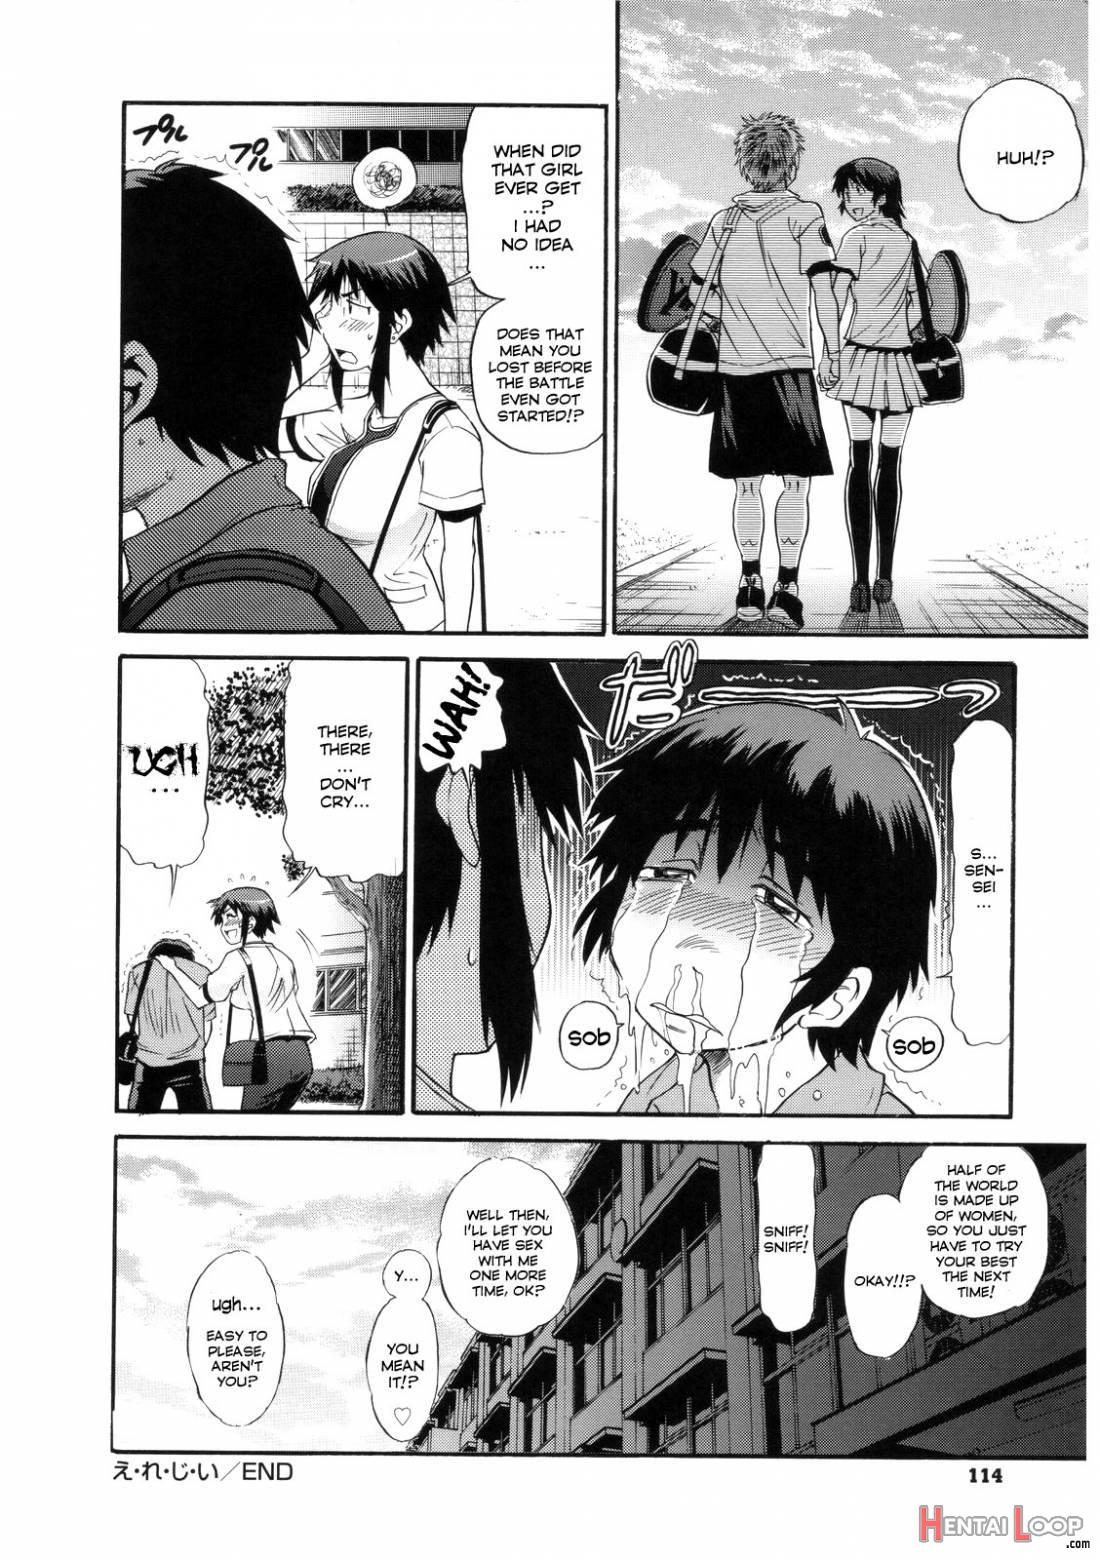 B-Chiku page 114